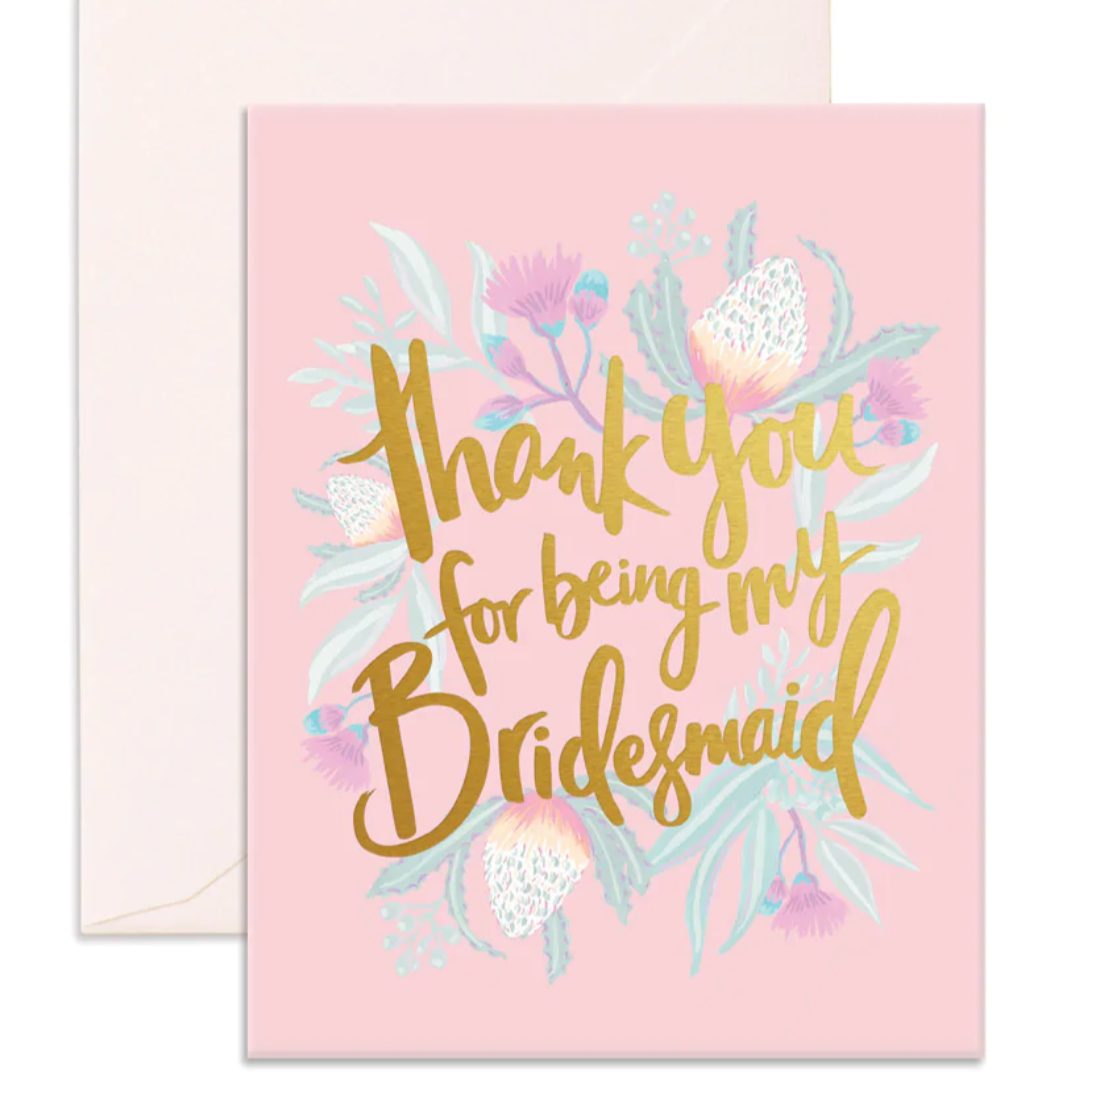 Thank you - Bridesmaid Card